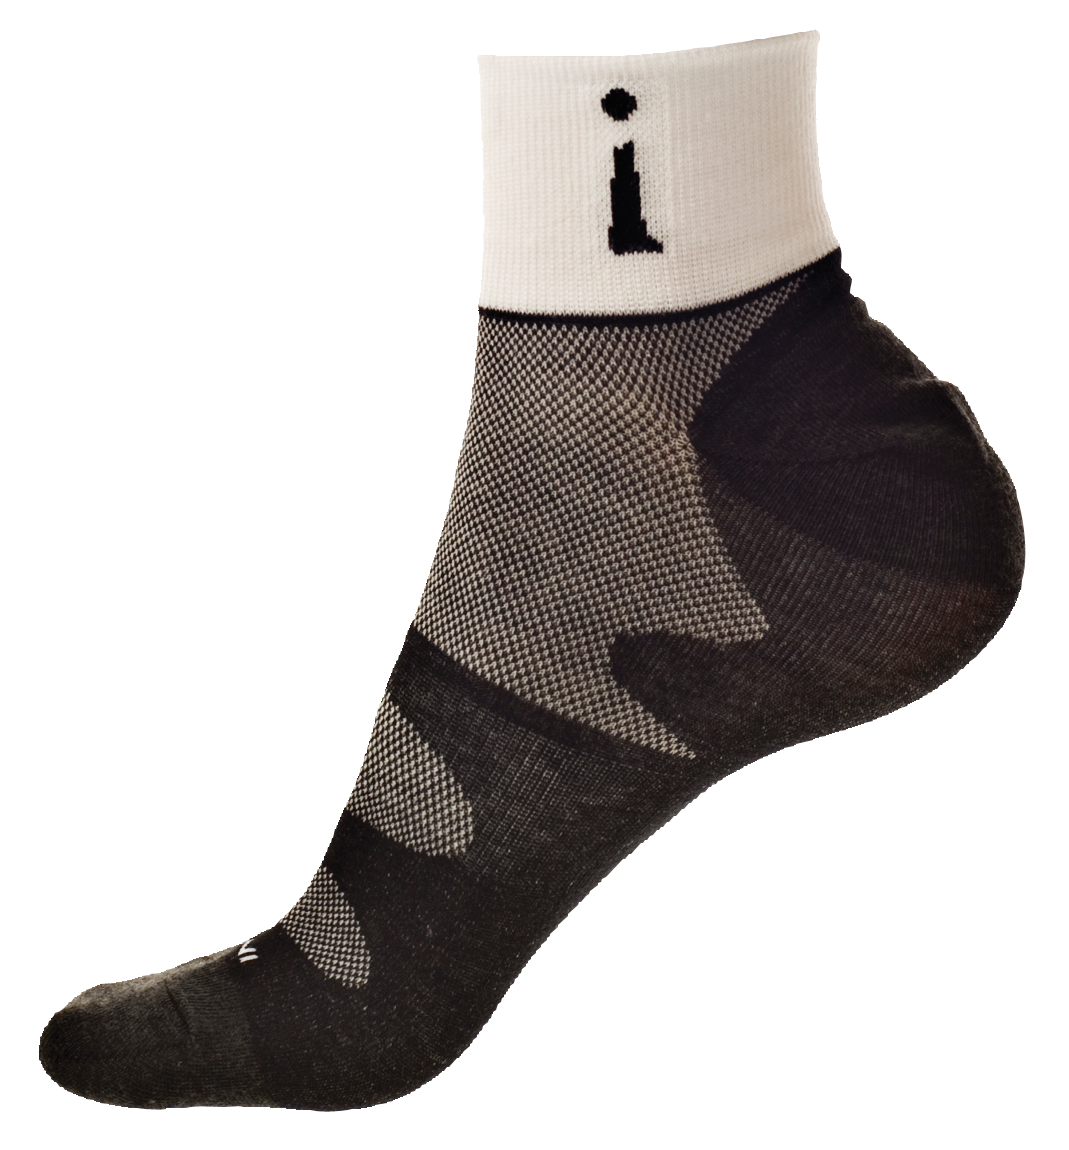 Black Socks PNG Image